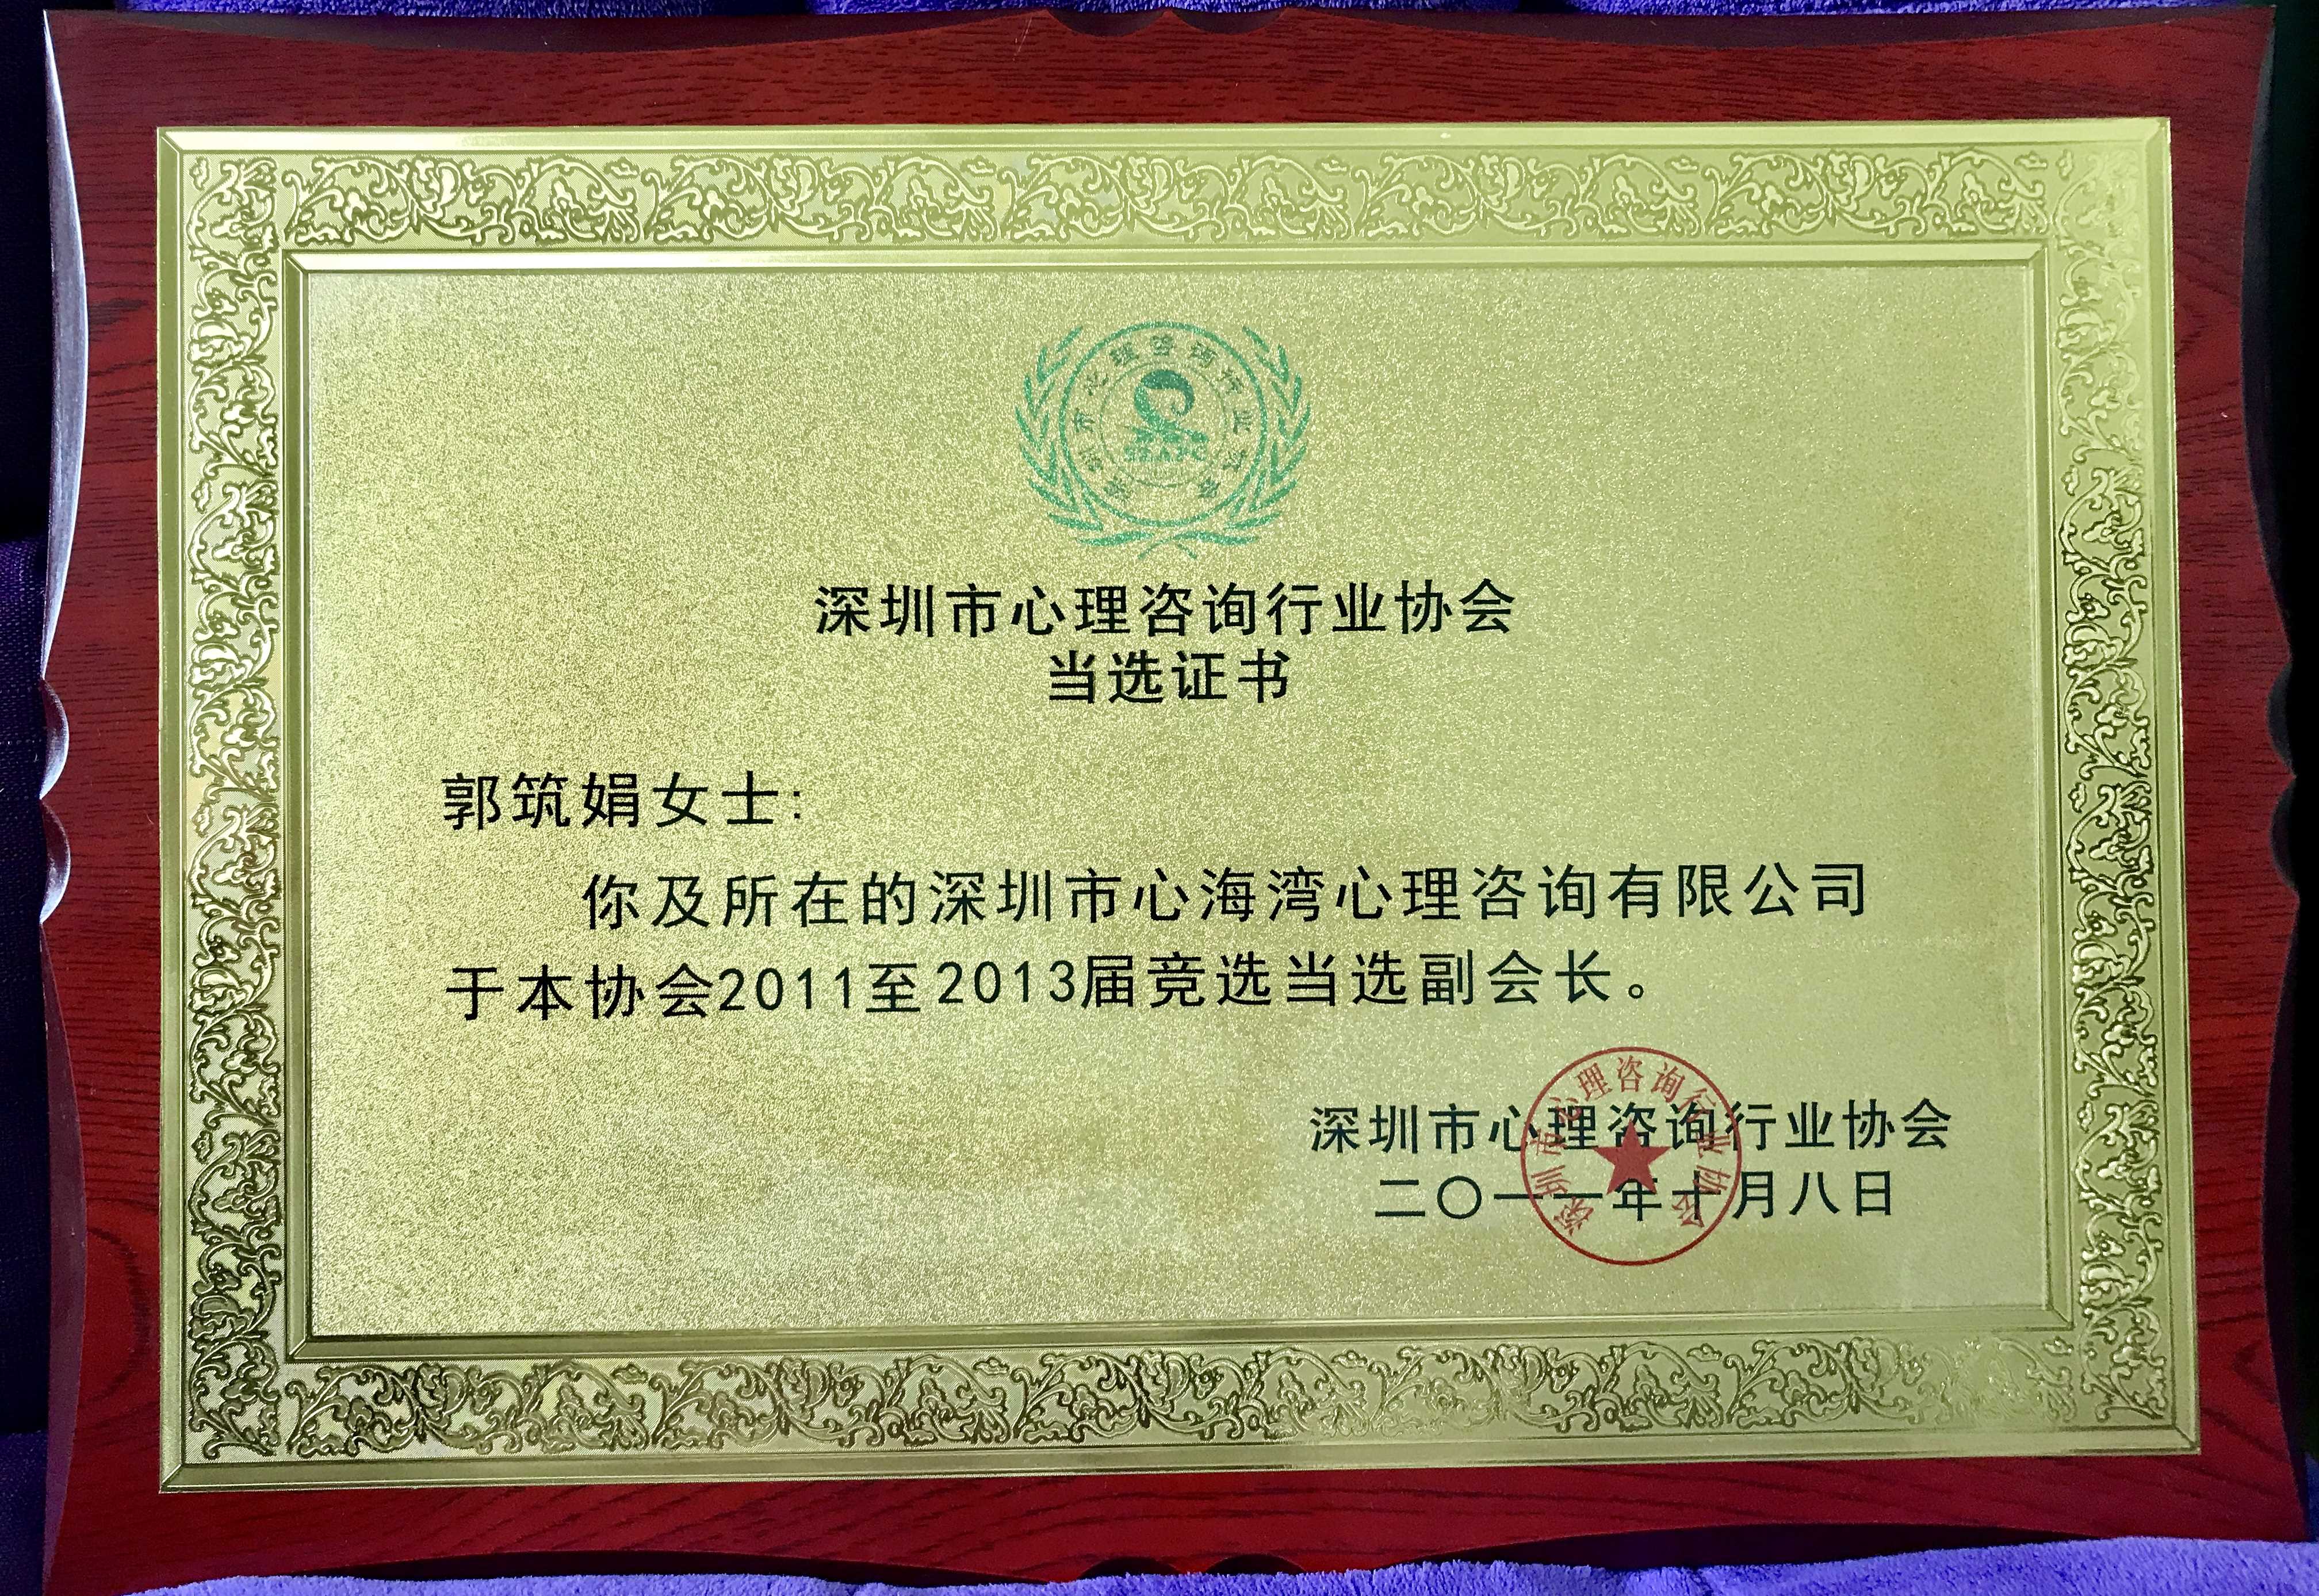 2011-2013深圳市心理咨询行业协会副会长单位